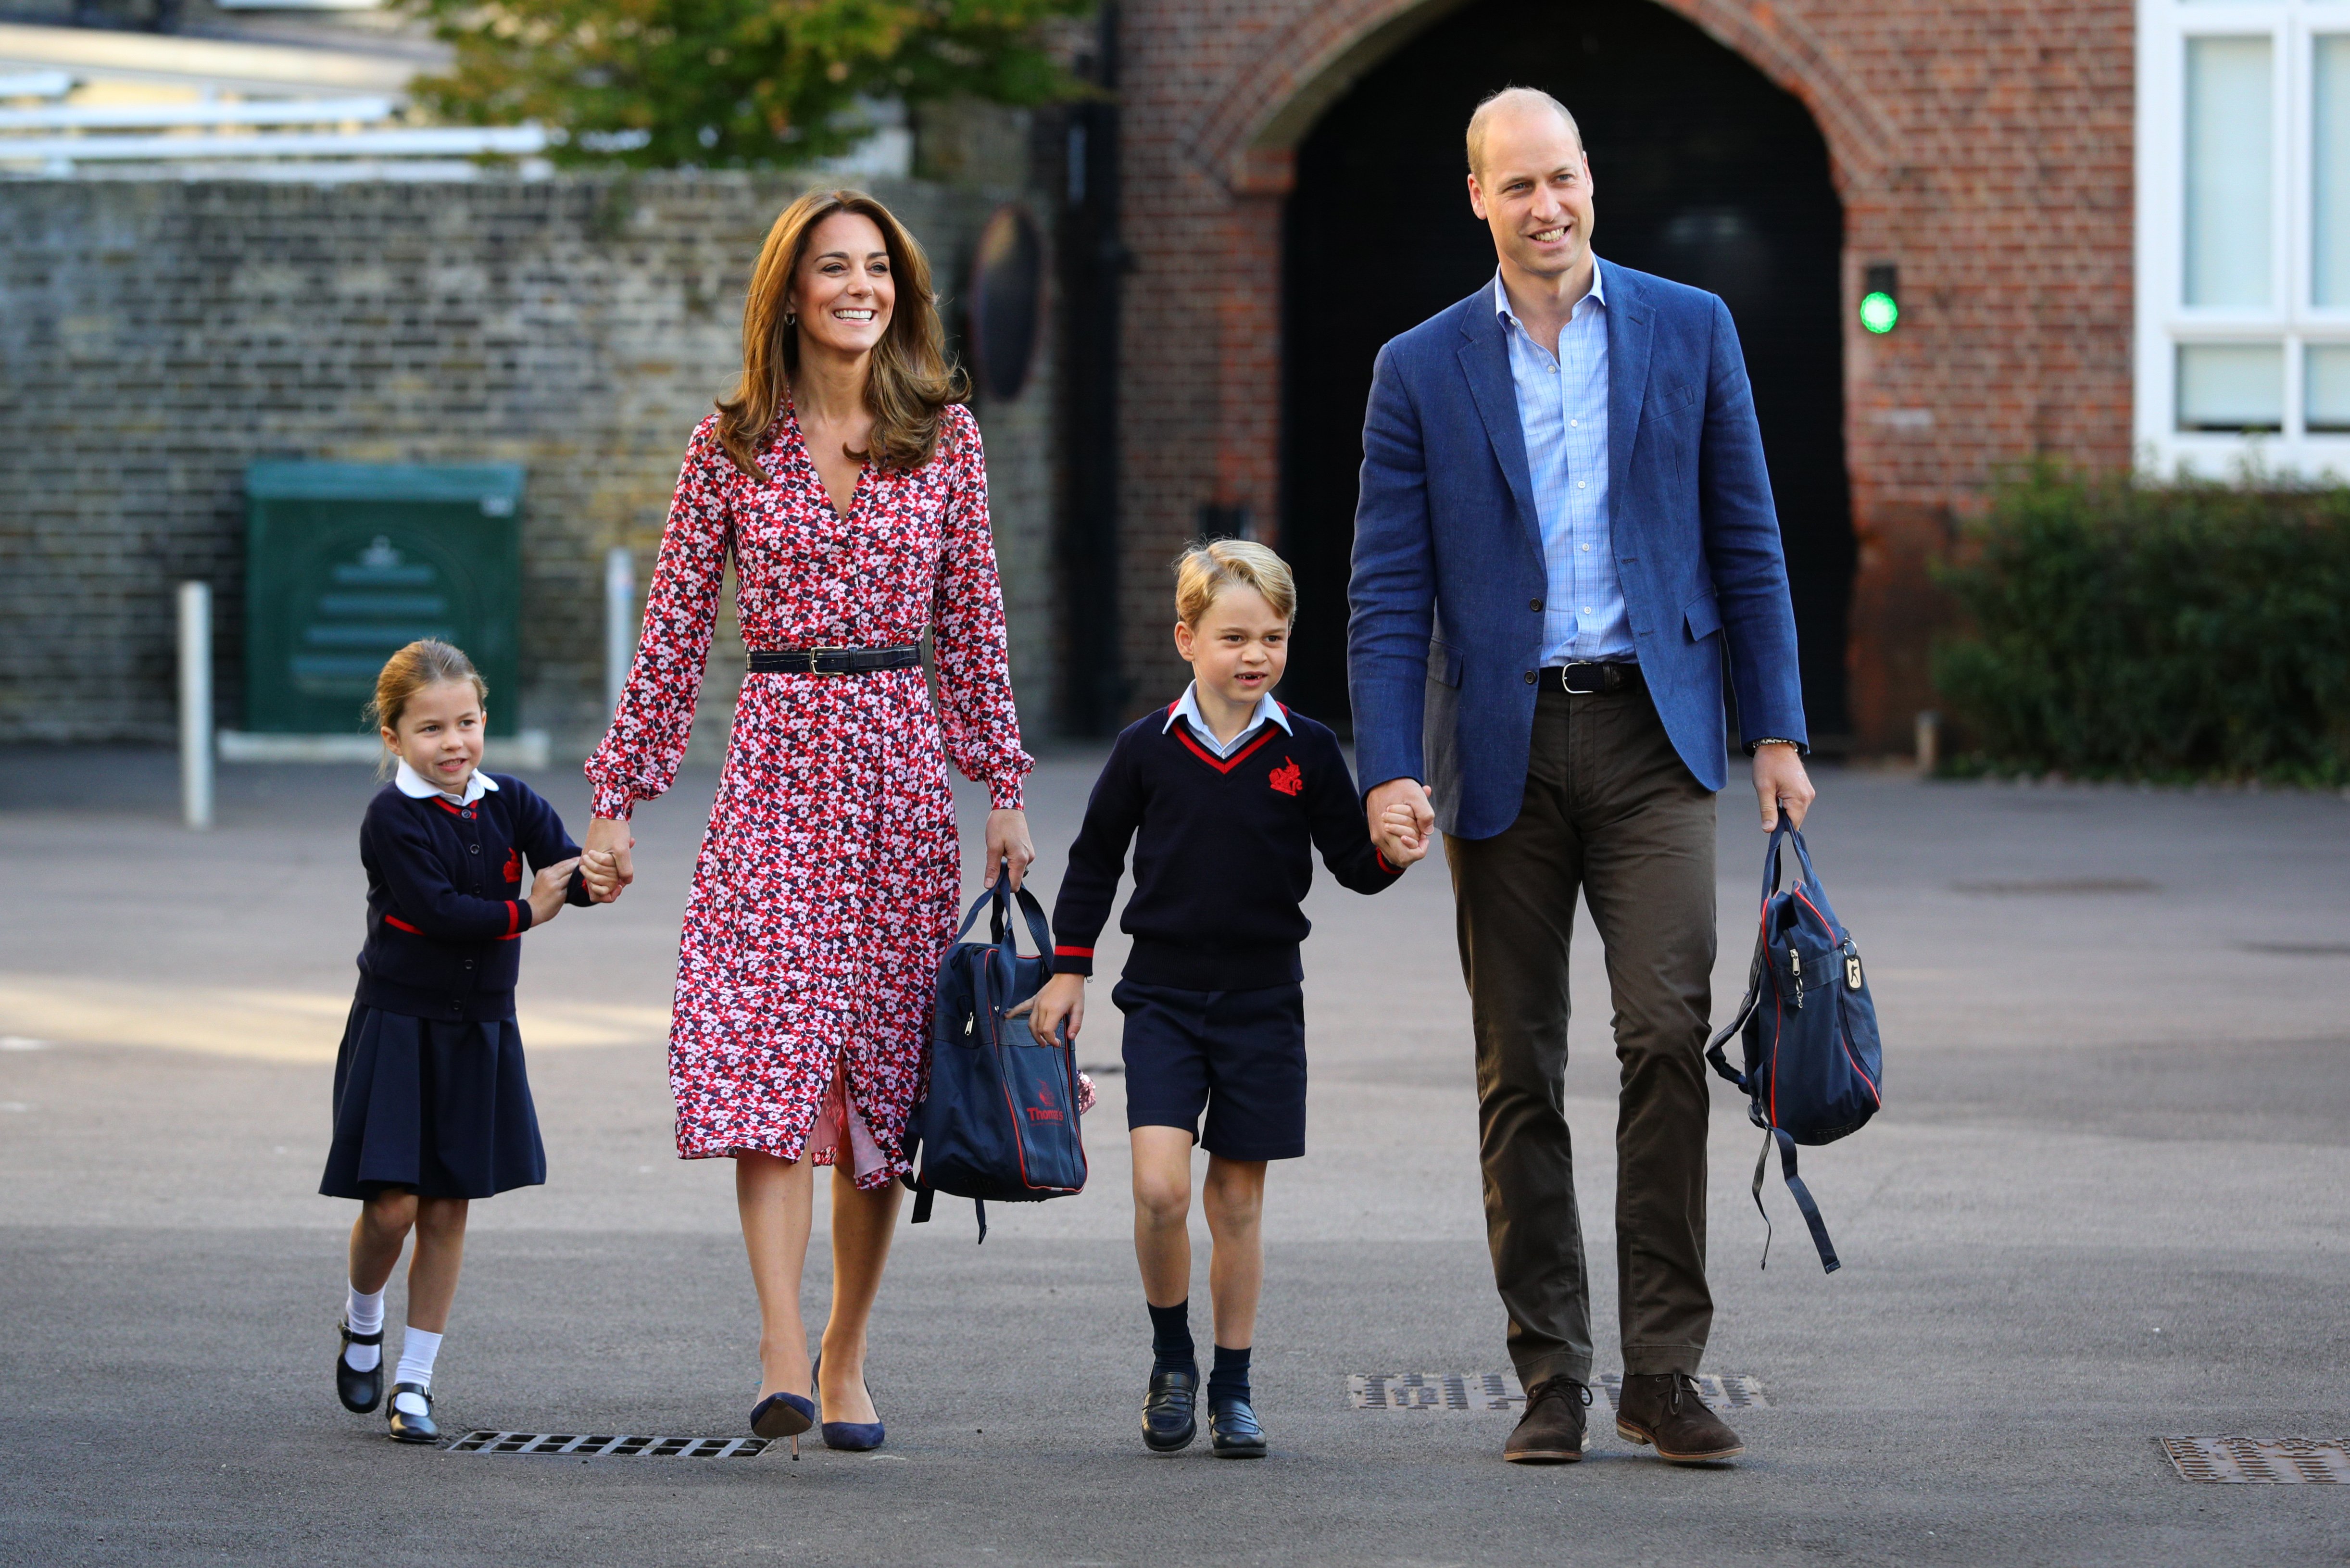 Prenses Charlotte, erkek kardeşi Prince George ve ailesi Galler Prensi ve Prensesi ile birlikte 5 Eylül 2019'da Londra, İngiltere'deki Thomas's Battersea'de okulun ilk günü için geliyor.  |  Kaynak: Getty Images